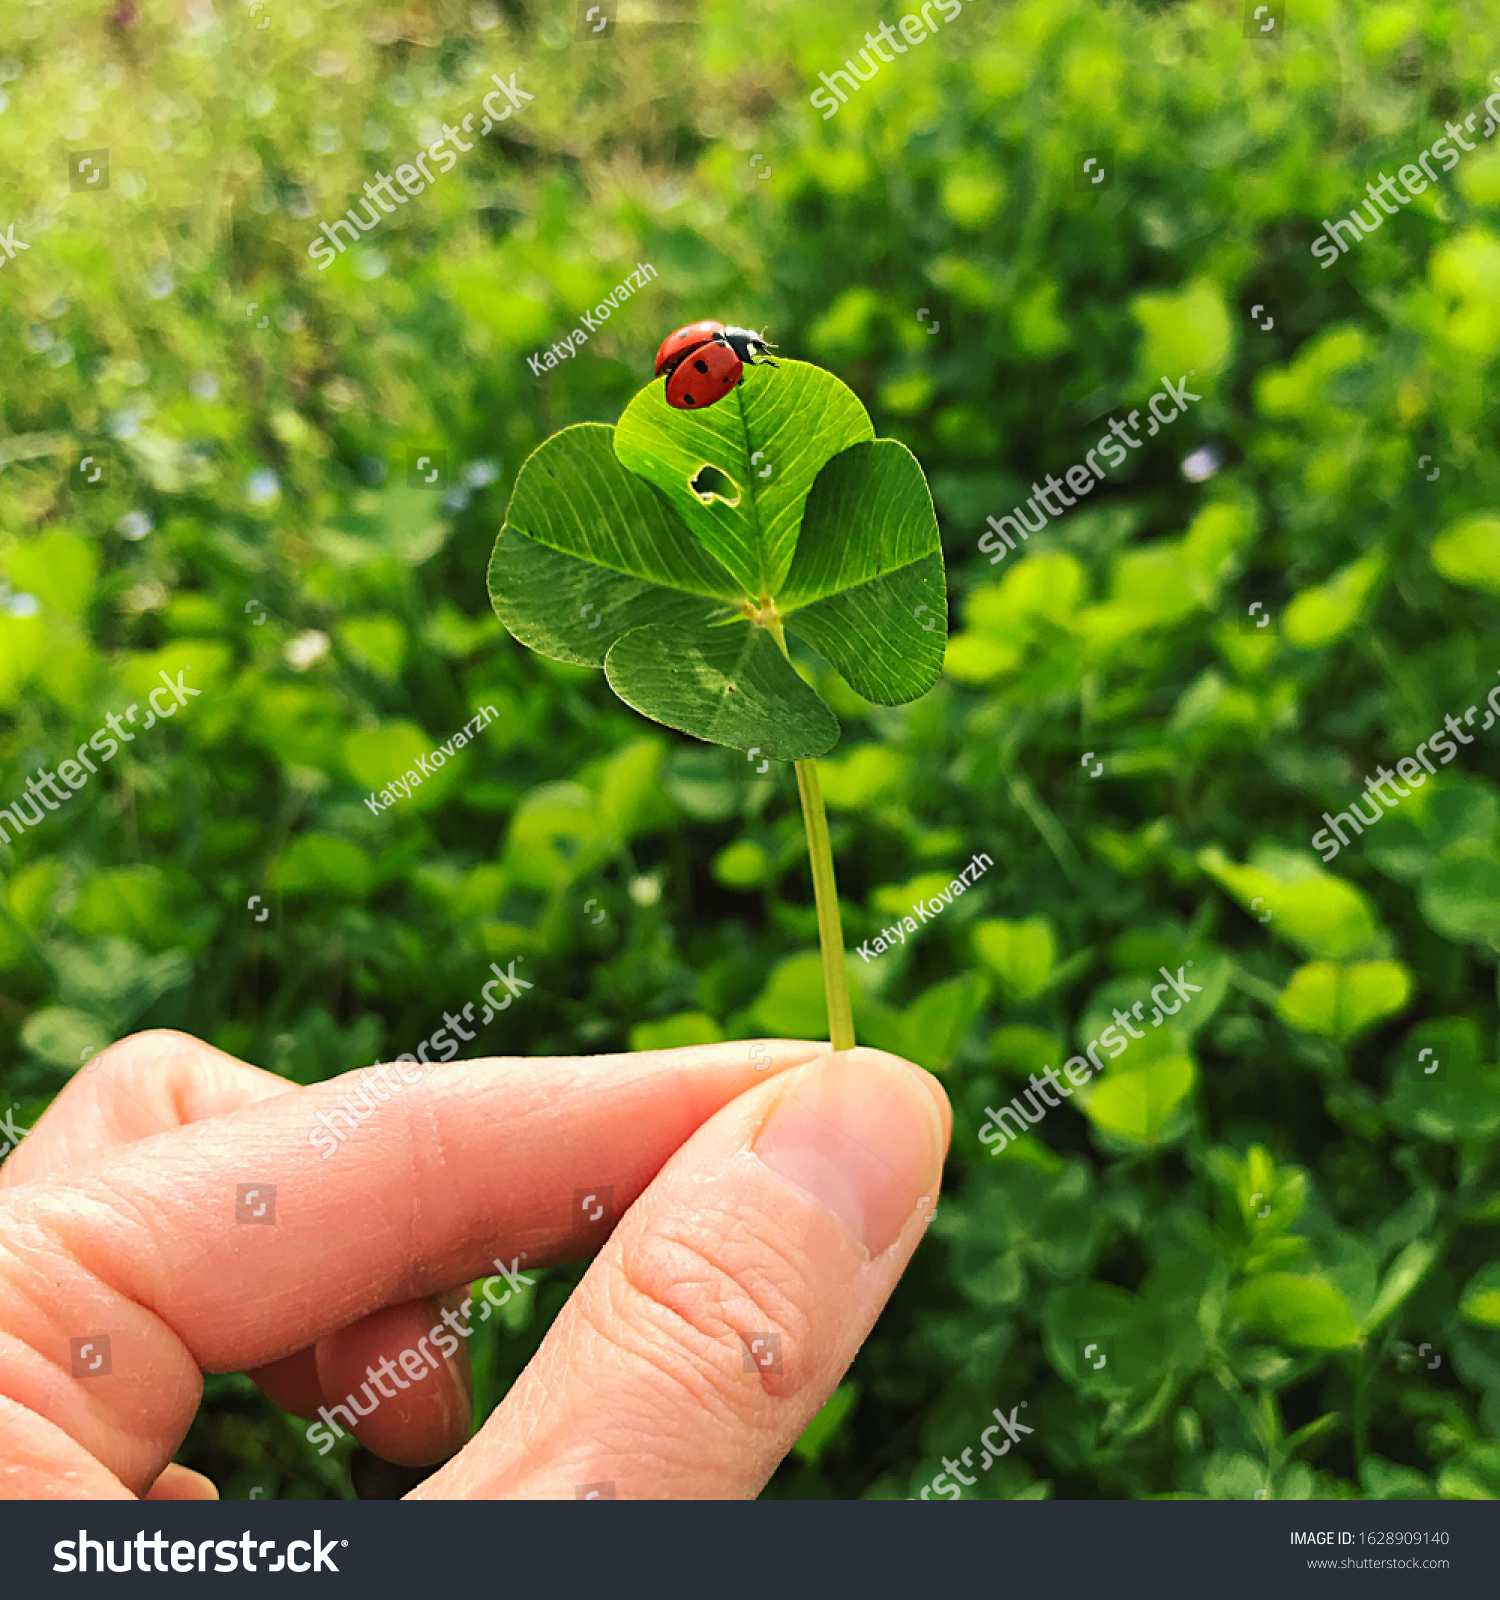 Four-leaf clover with a ladybug. Lucky charm. #1628909140